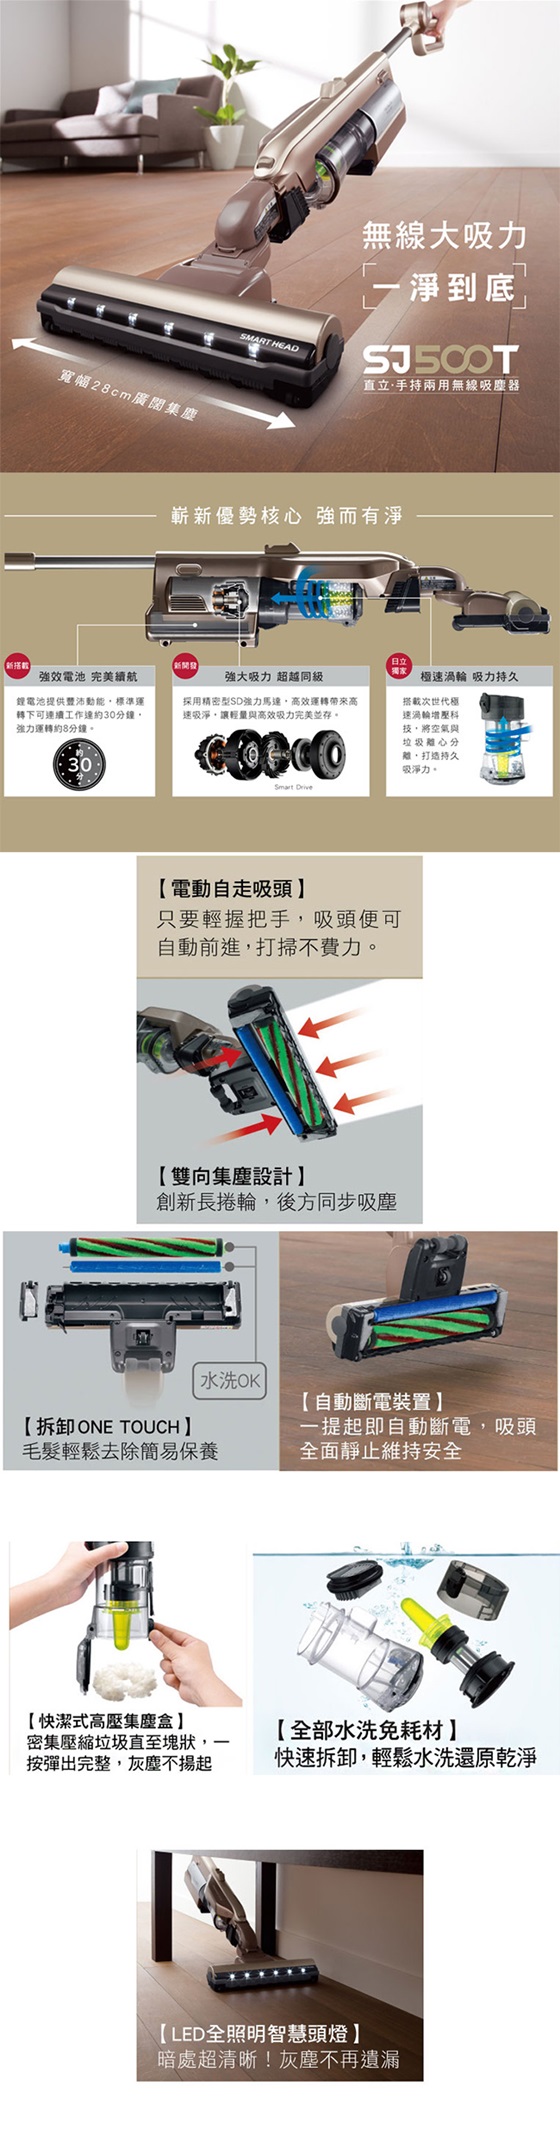 HITACHI/日立/日本/原裝/直立式/直立/手持式/無線/充電/免紙袋/吸塵器/PVSJ500T